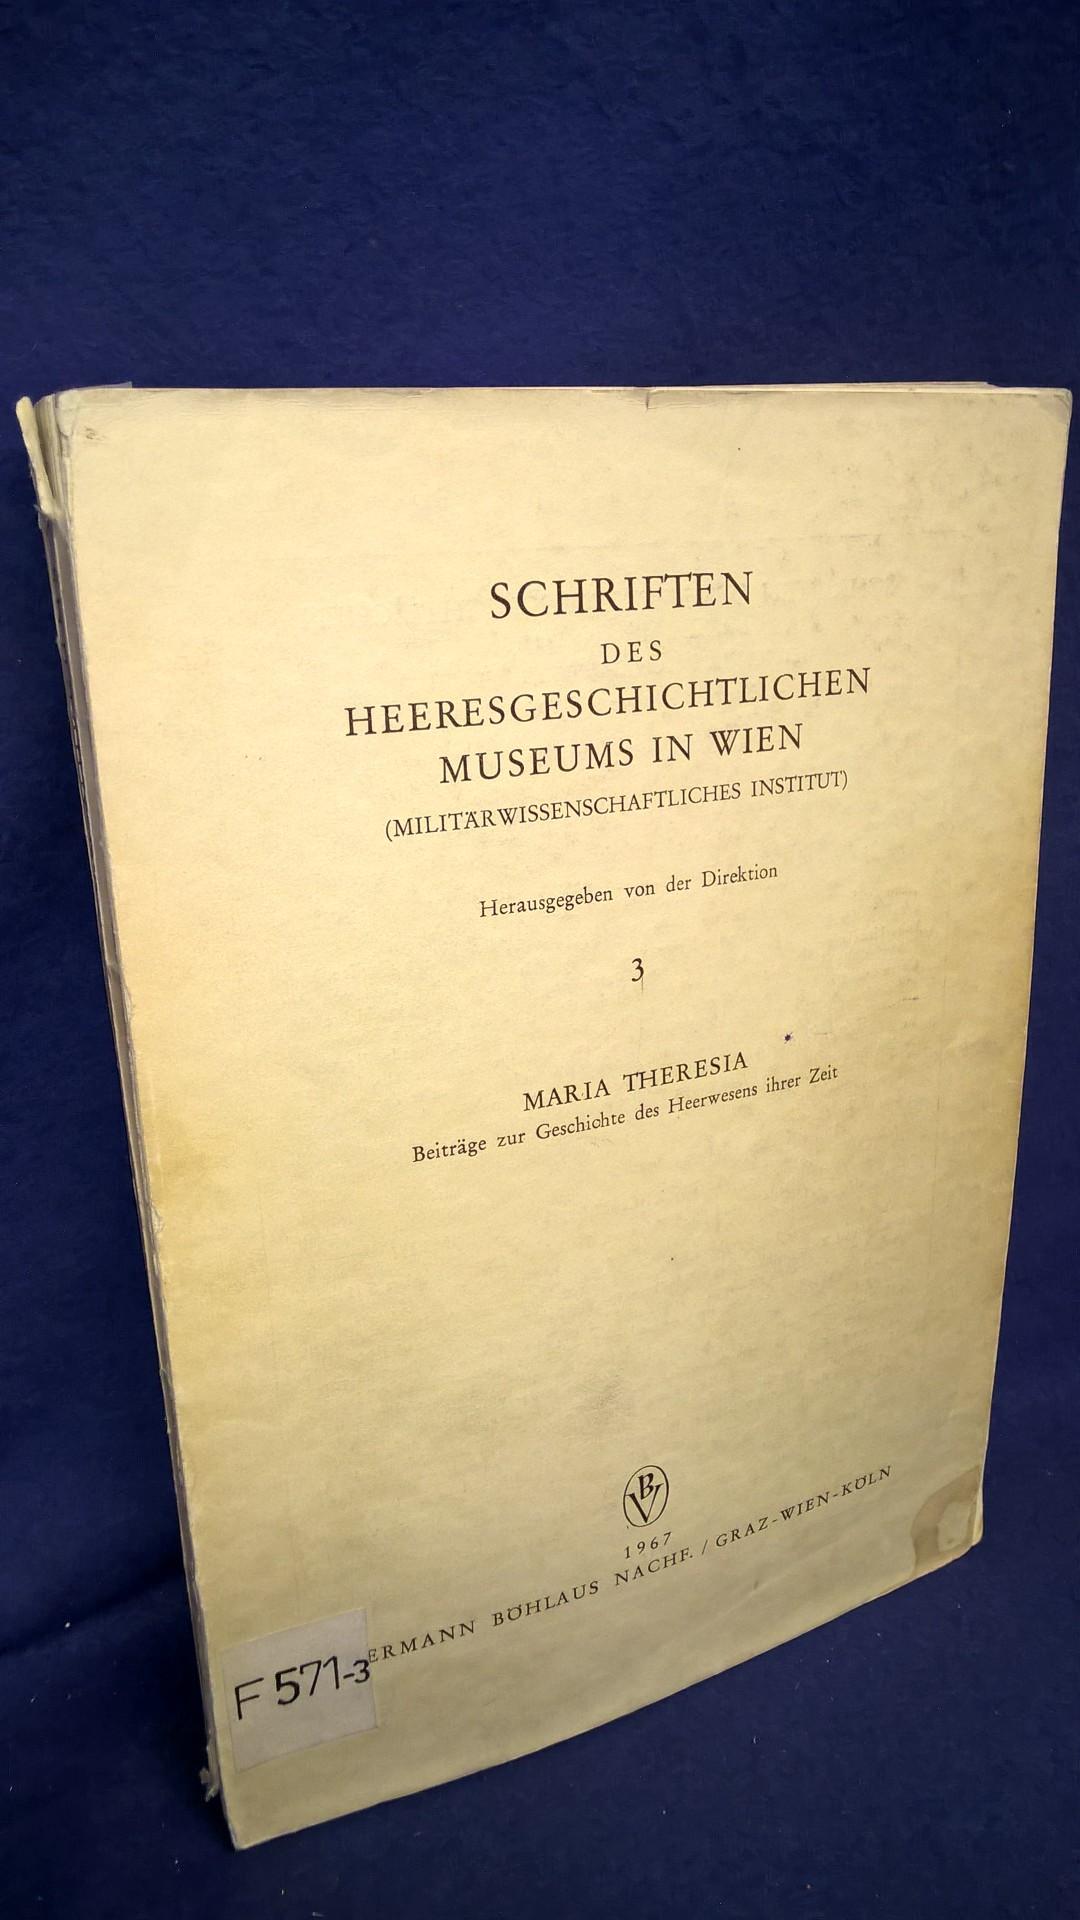 Schriften des Heeresgeschichtlichen Museums in Wien, Band 3: Maria Theresia - Beiträge zur Geschichte des Heerwesens ihrer Zeit -